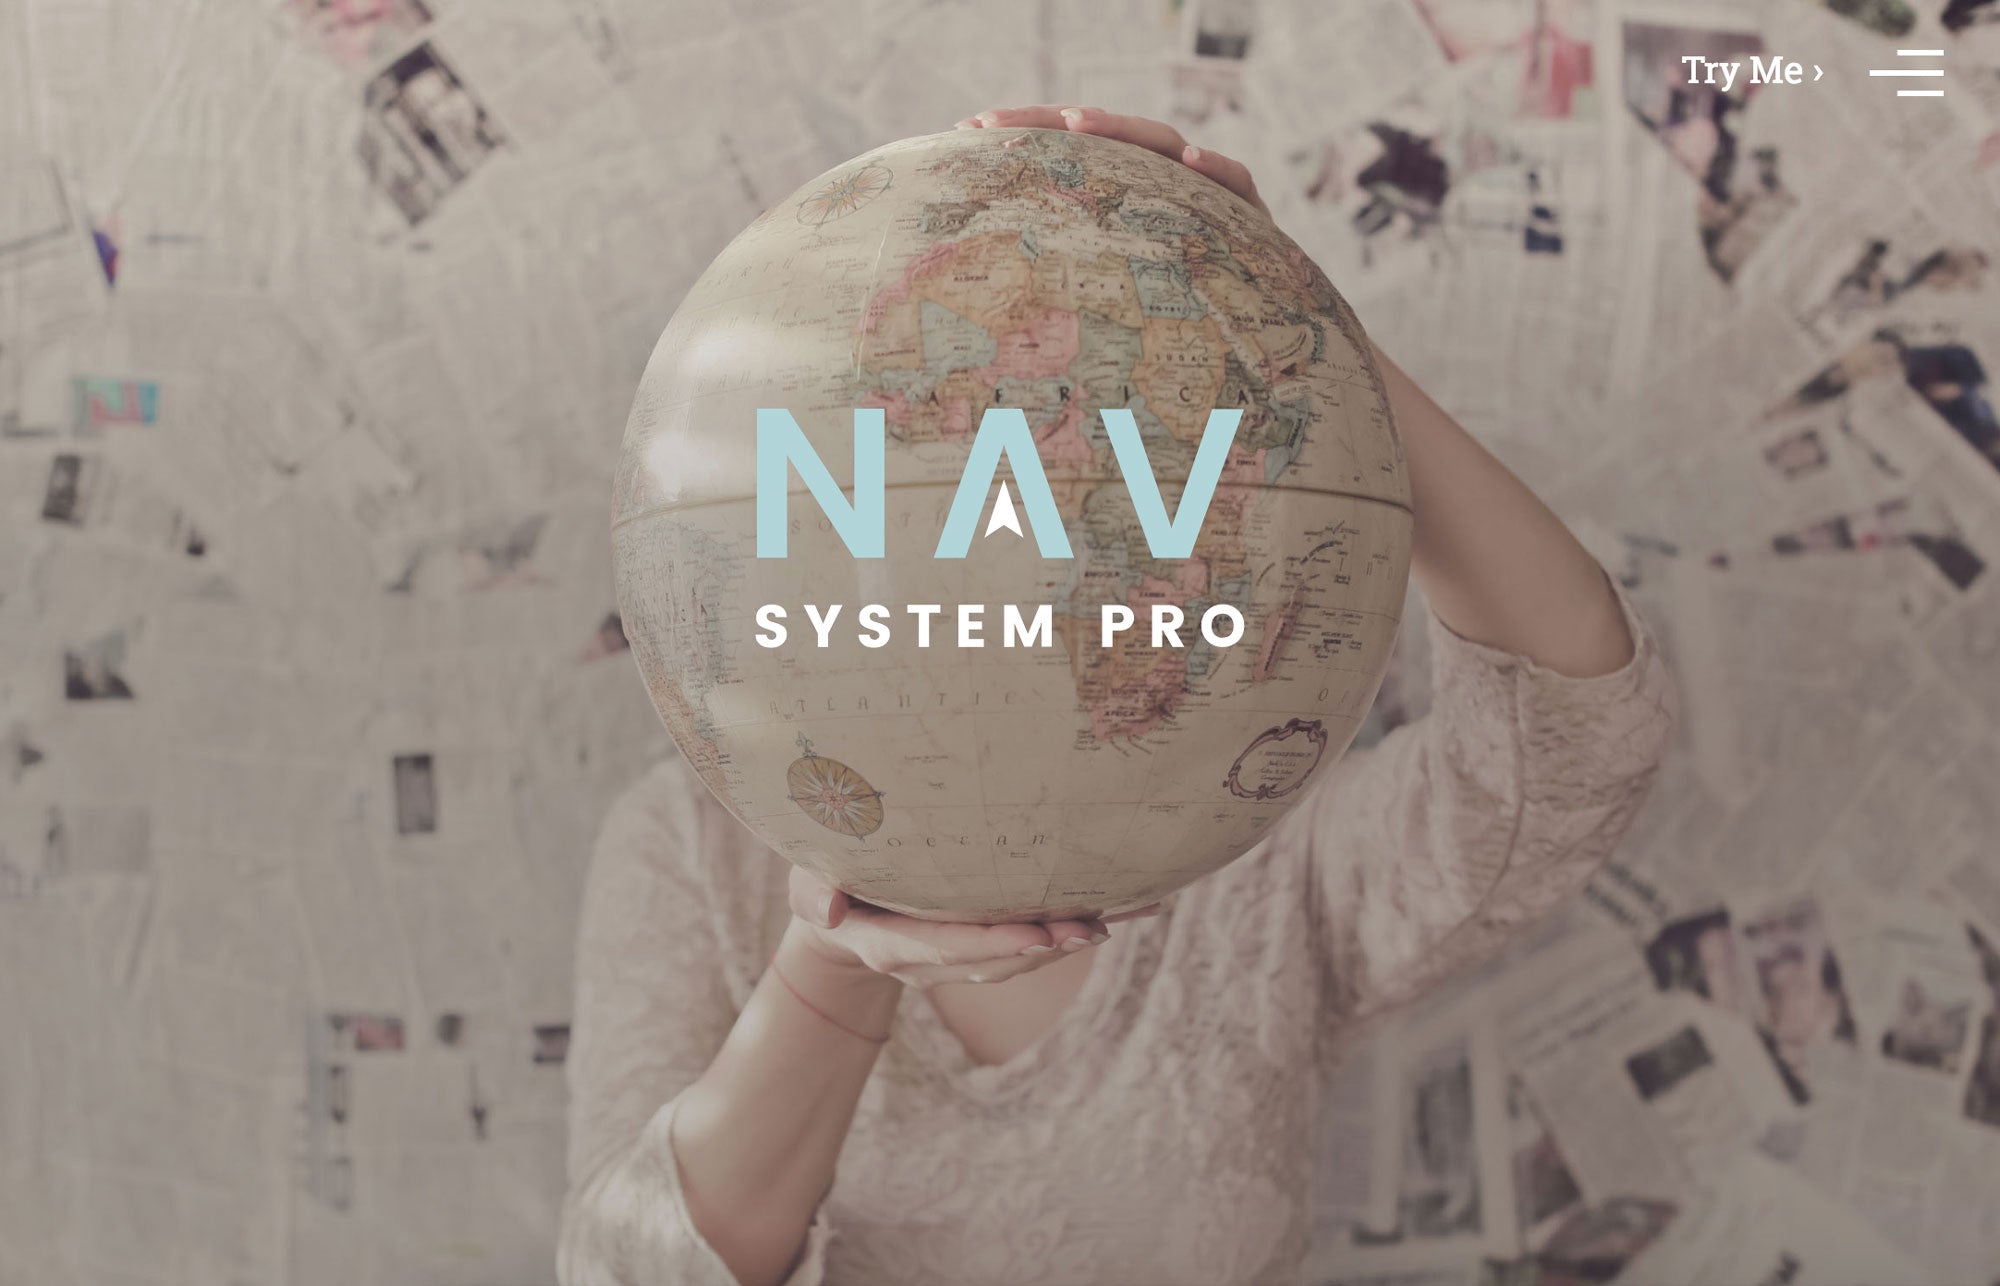 Nav System